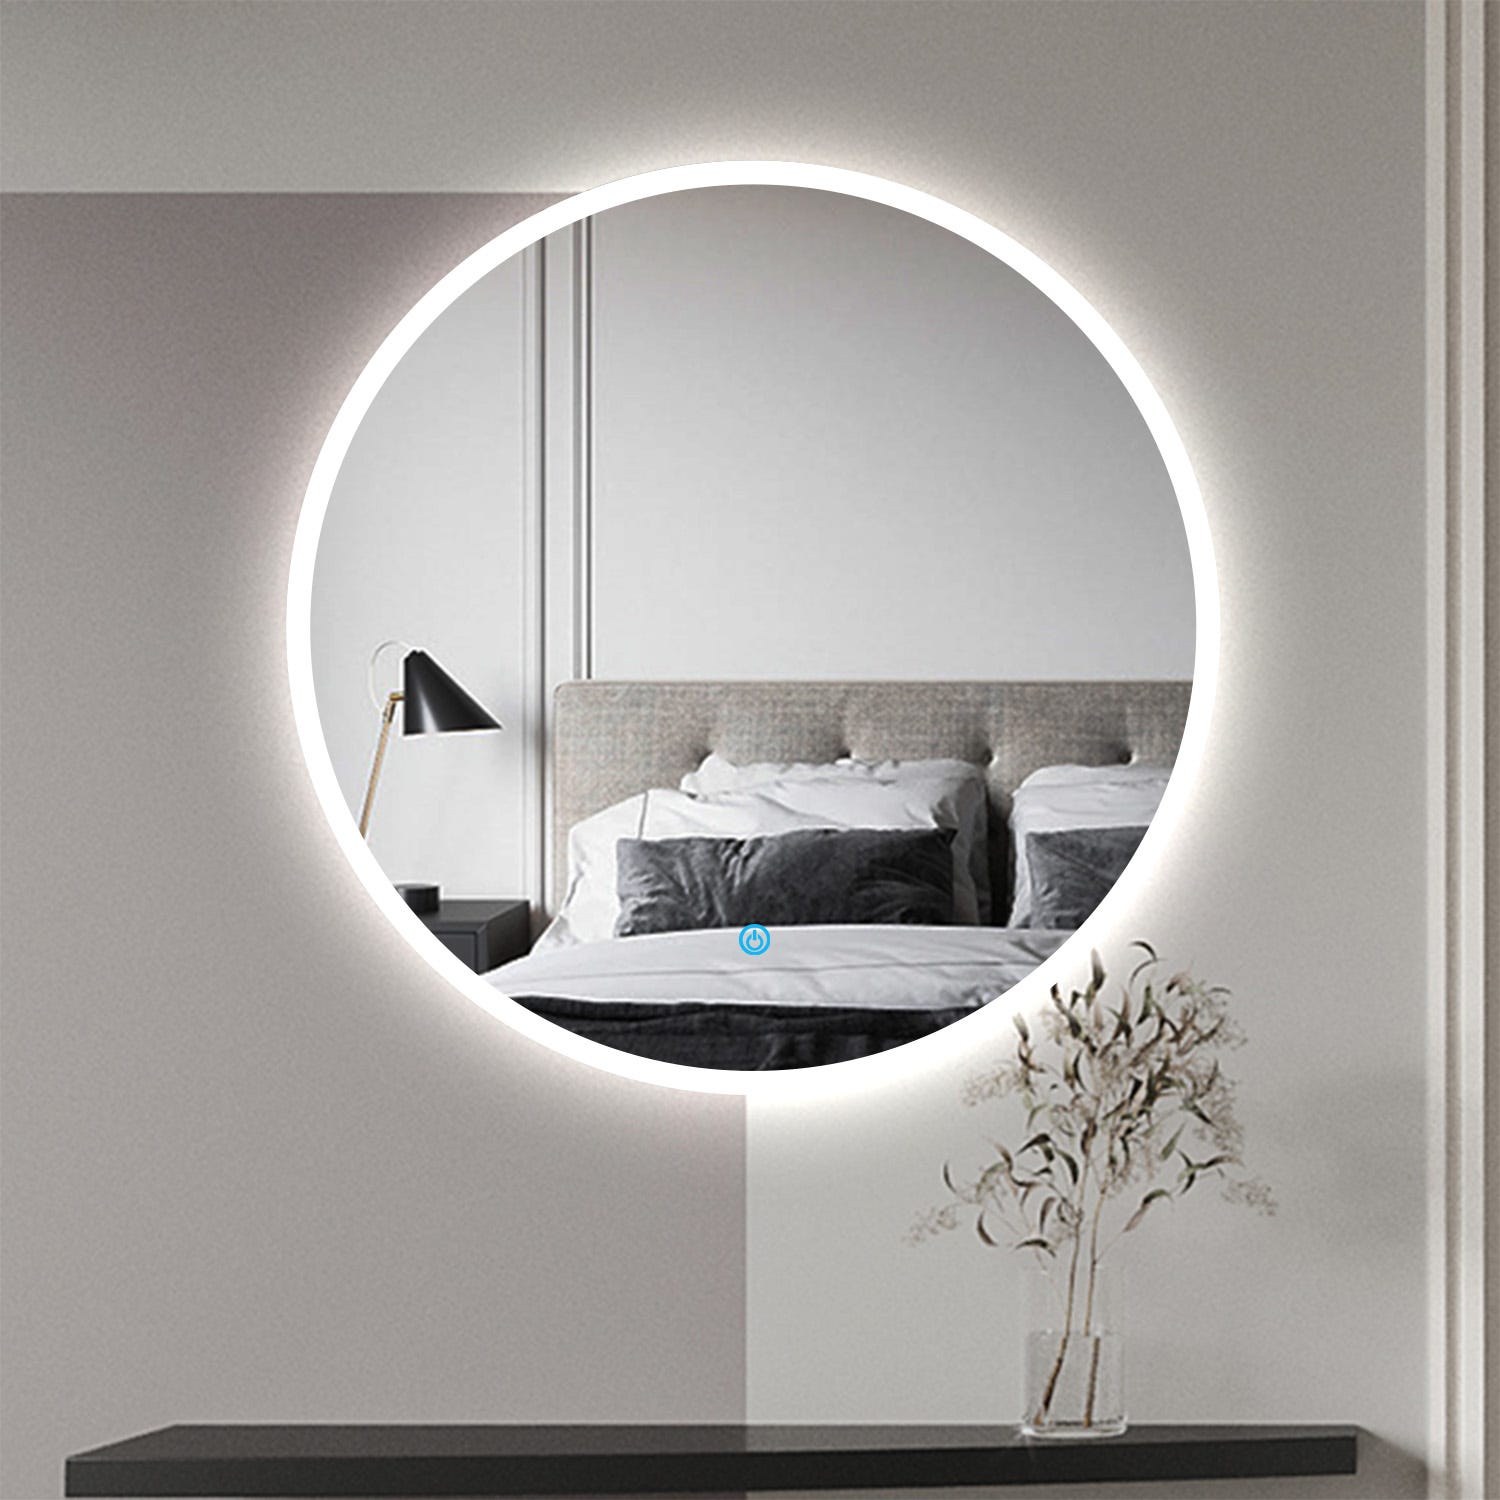 80cm Specchio da Bagno Rotondo, per Bagno, specchio LED con funzione  anti-appannamento, interruttore touch, Bianco Freddo 6000K